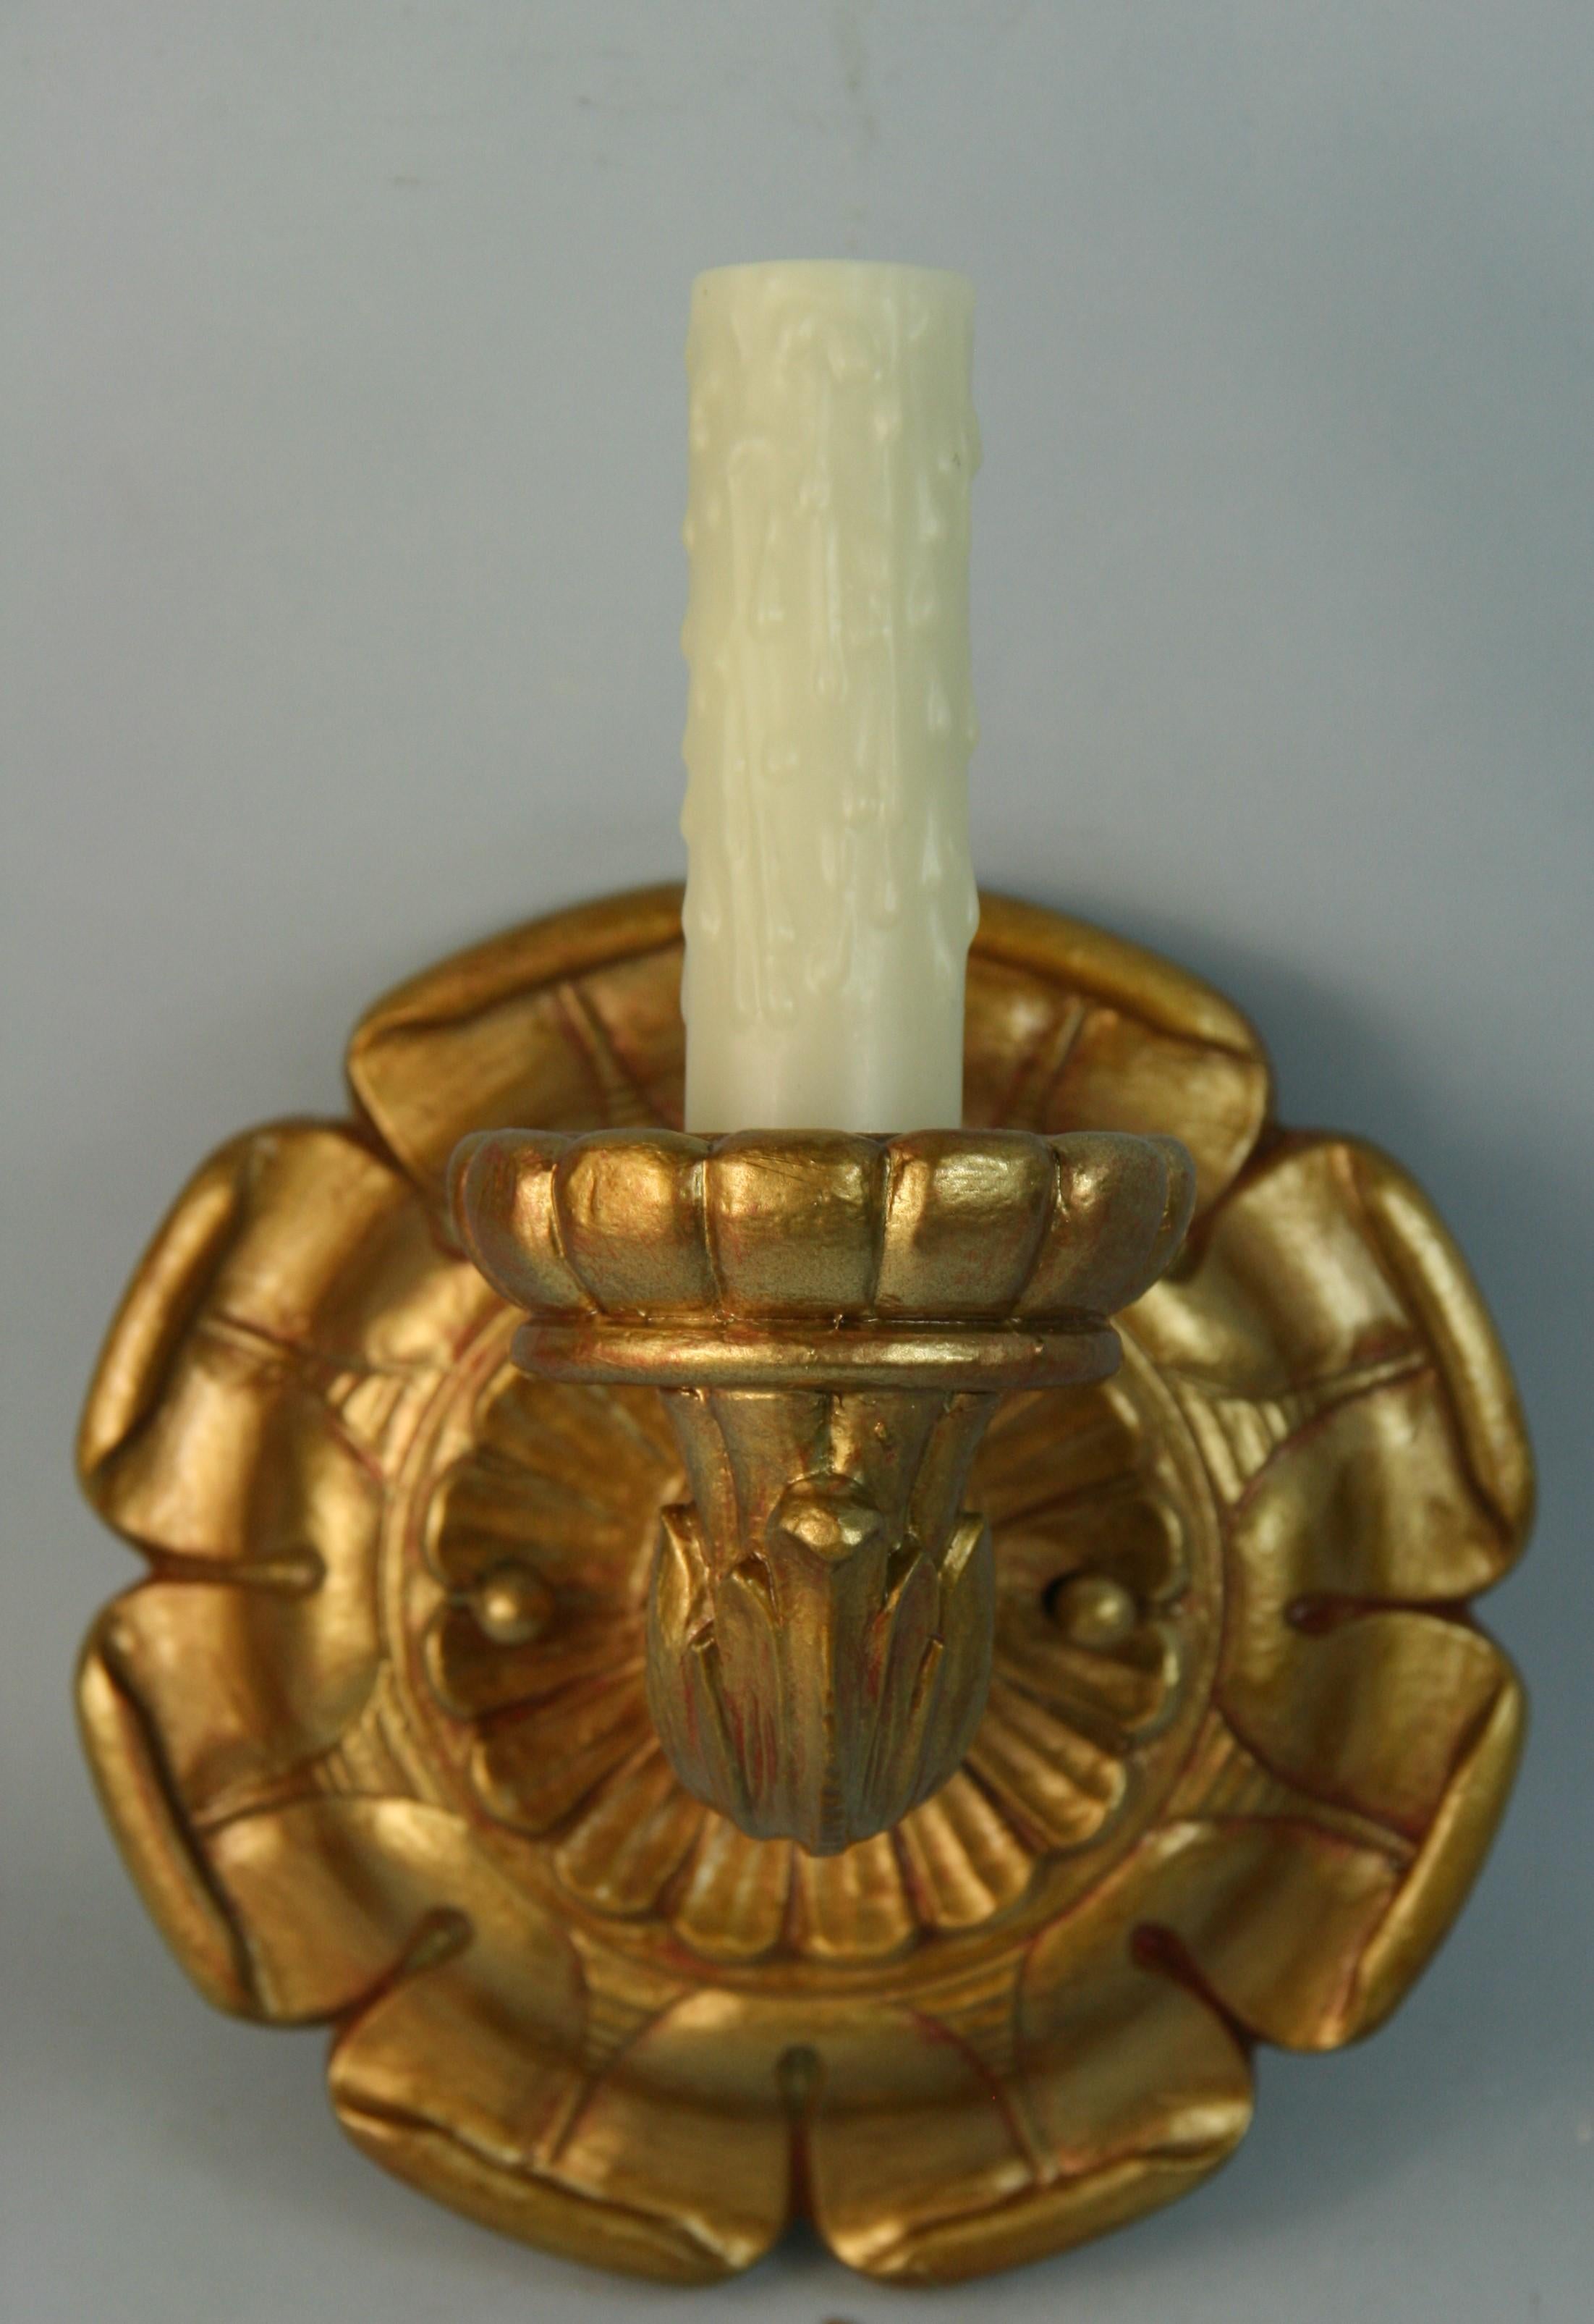 1521 Antiquités  paire dorée  appliques en bois sculpté
Nouveau câblage
Fonctionne avec une ampoule candélabre de 60 watts maximum.